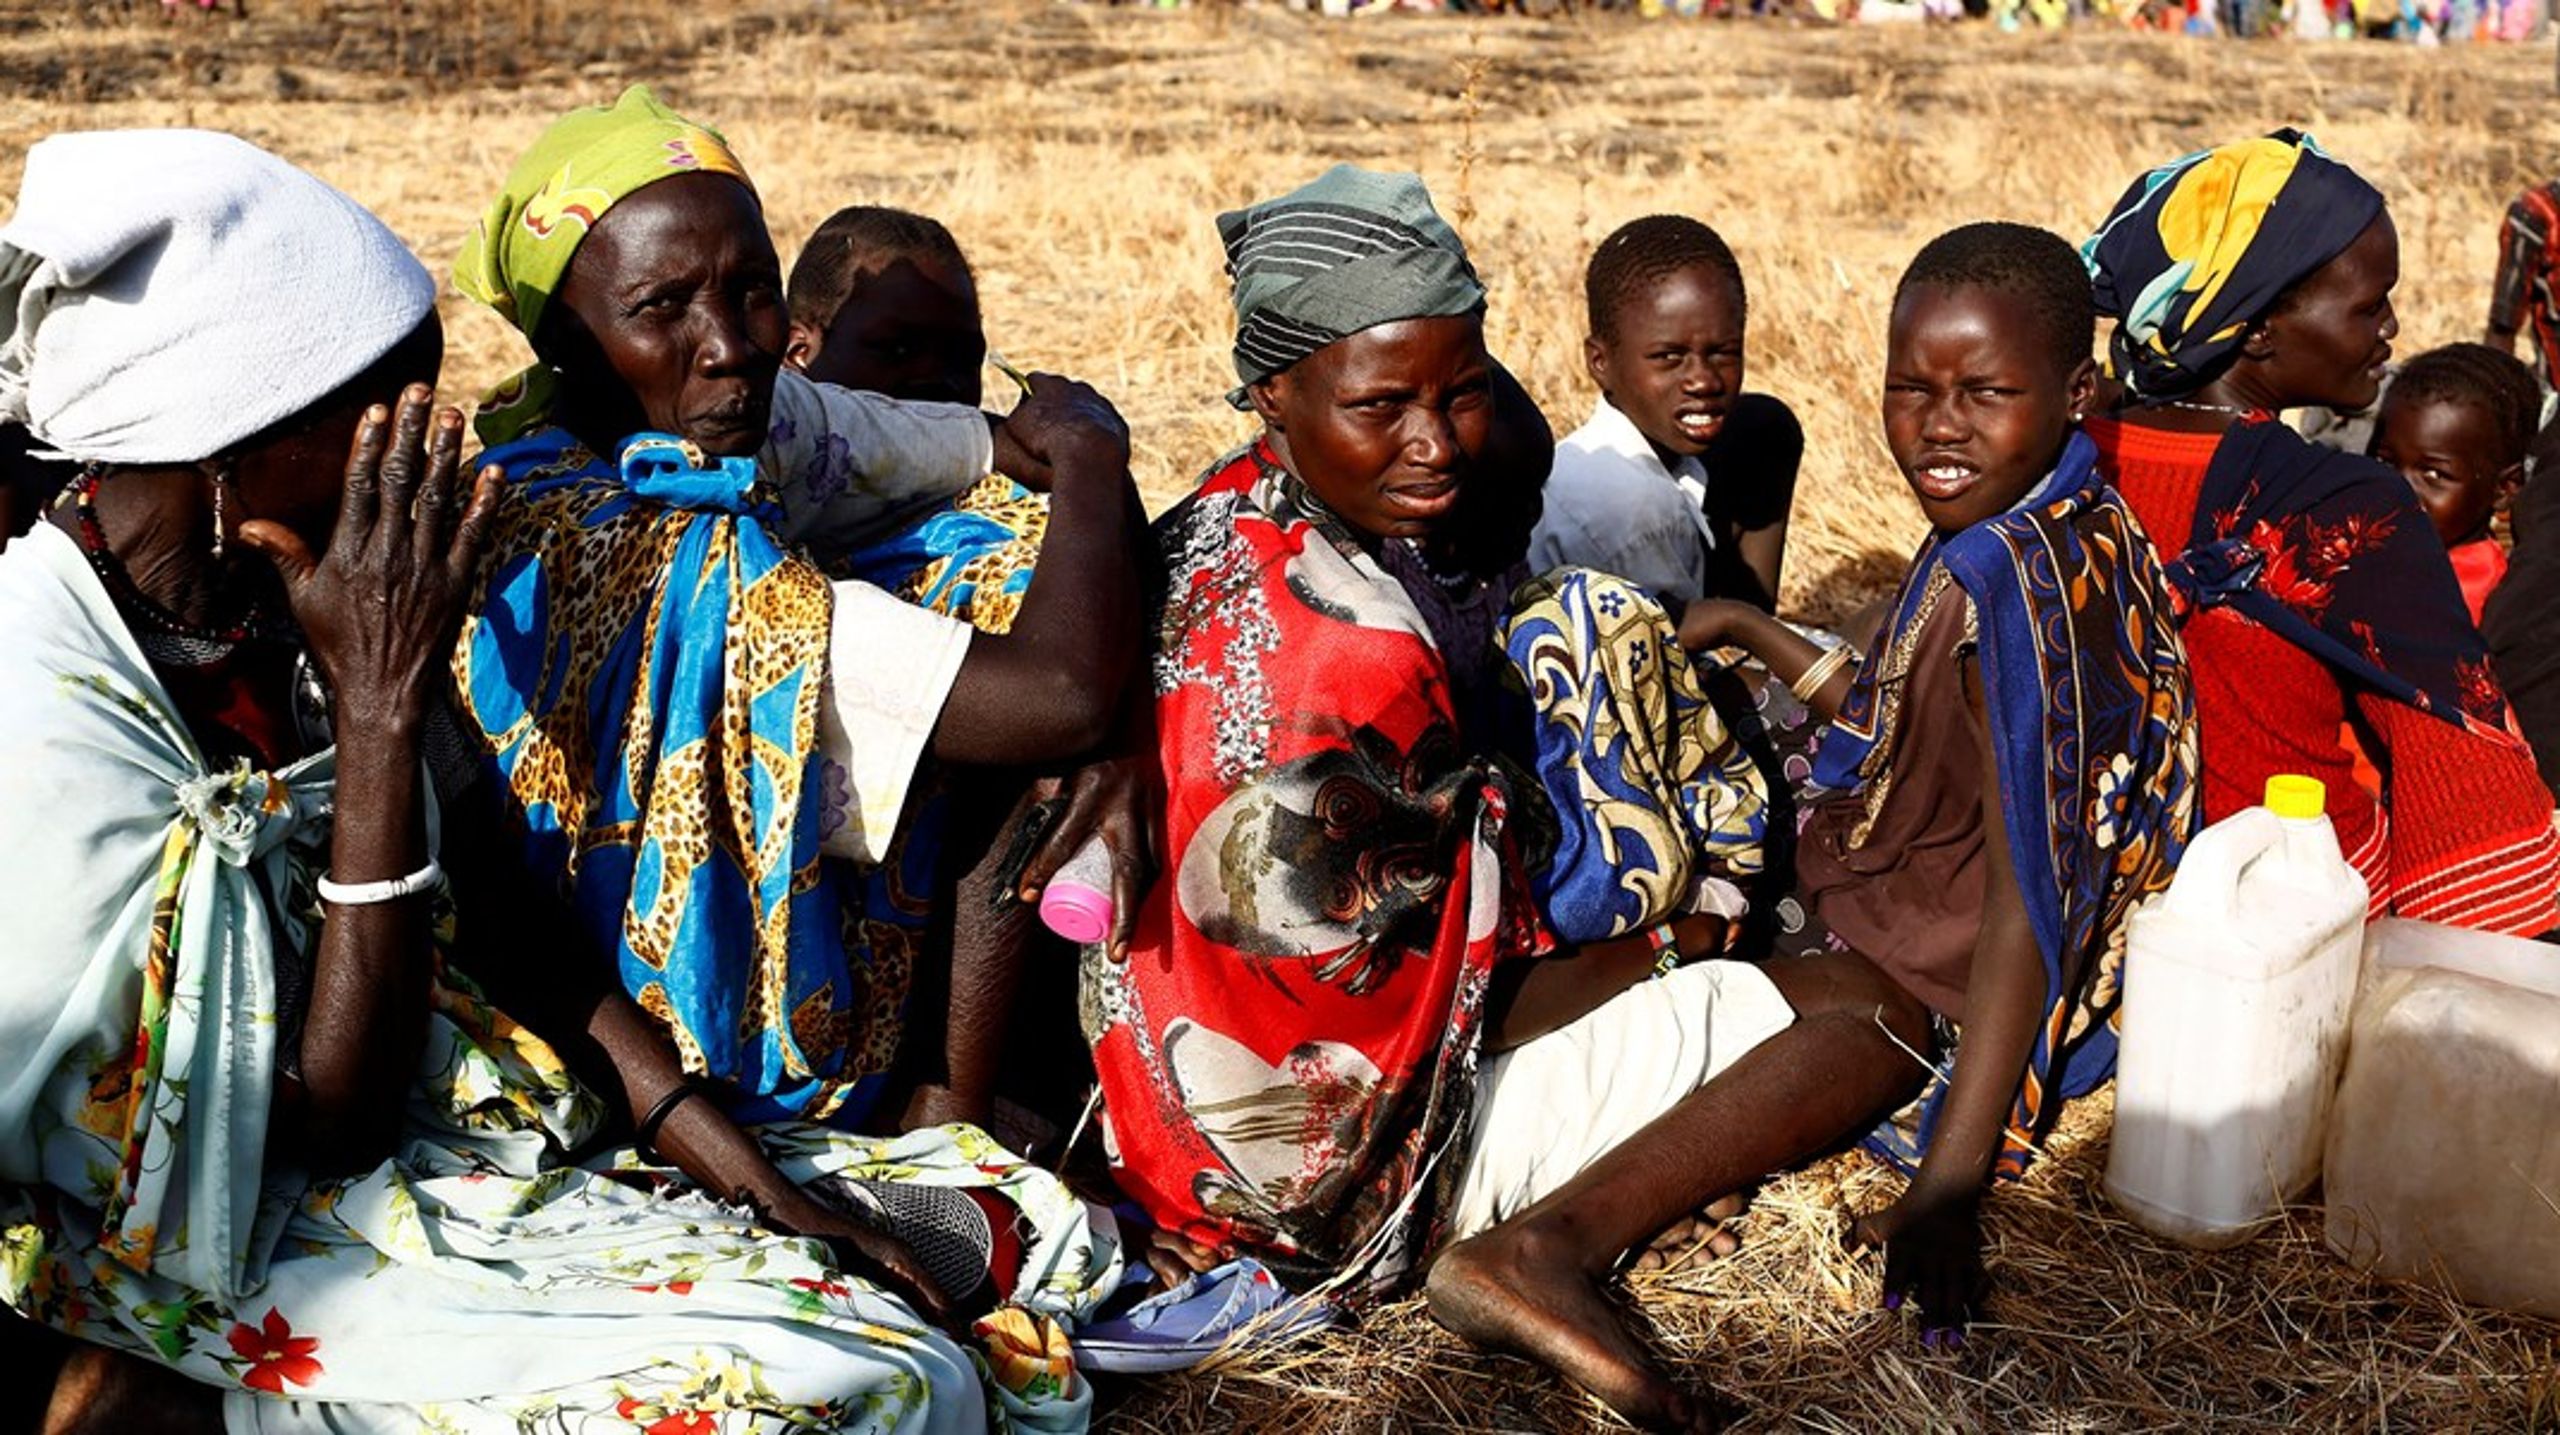 Antallet at sultende mennesker stiger i verden. Særligt i Sydsudan står befolkningen overfor en decideret hungersnød. Derfor er der brug for, at World Food Summit sætter fokus på sult, skriver Birgitte Qvist-Sørensen.